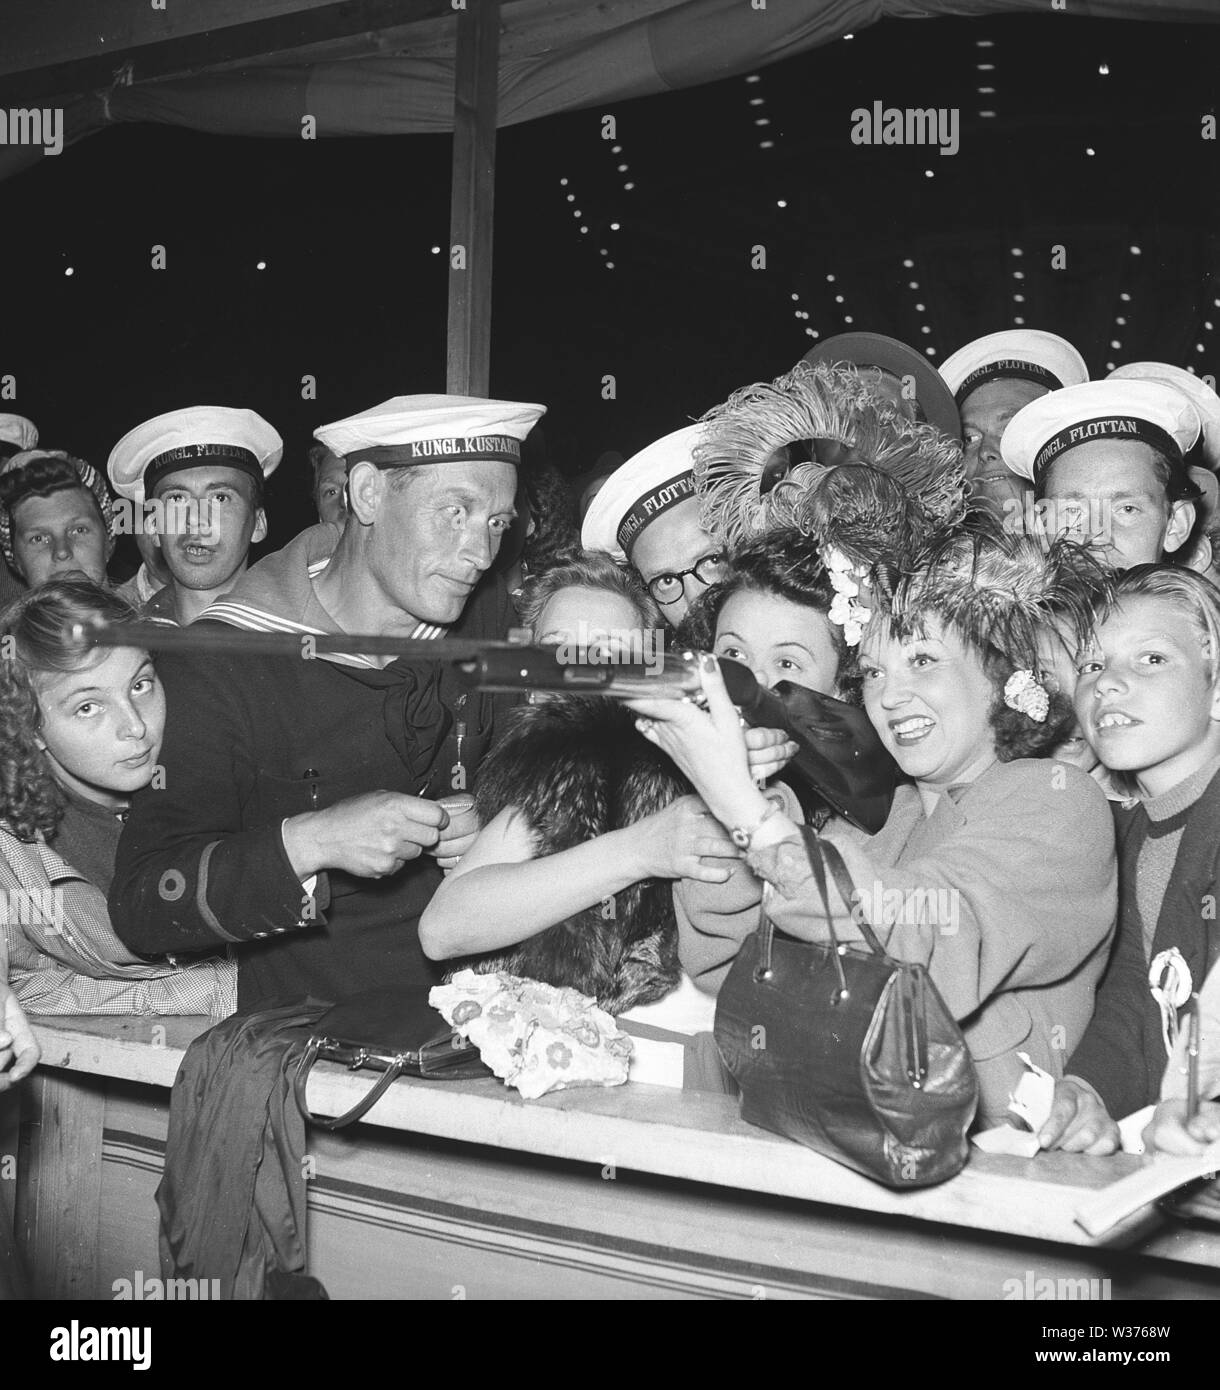 Parco di Divertimenti di 1940s. Un gruppo di marinai ha raccolto intorno a una donna in un gioco di ripresa. La Svezia 1944. Kristoffersson ref G139-4 Foto Stock